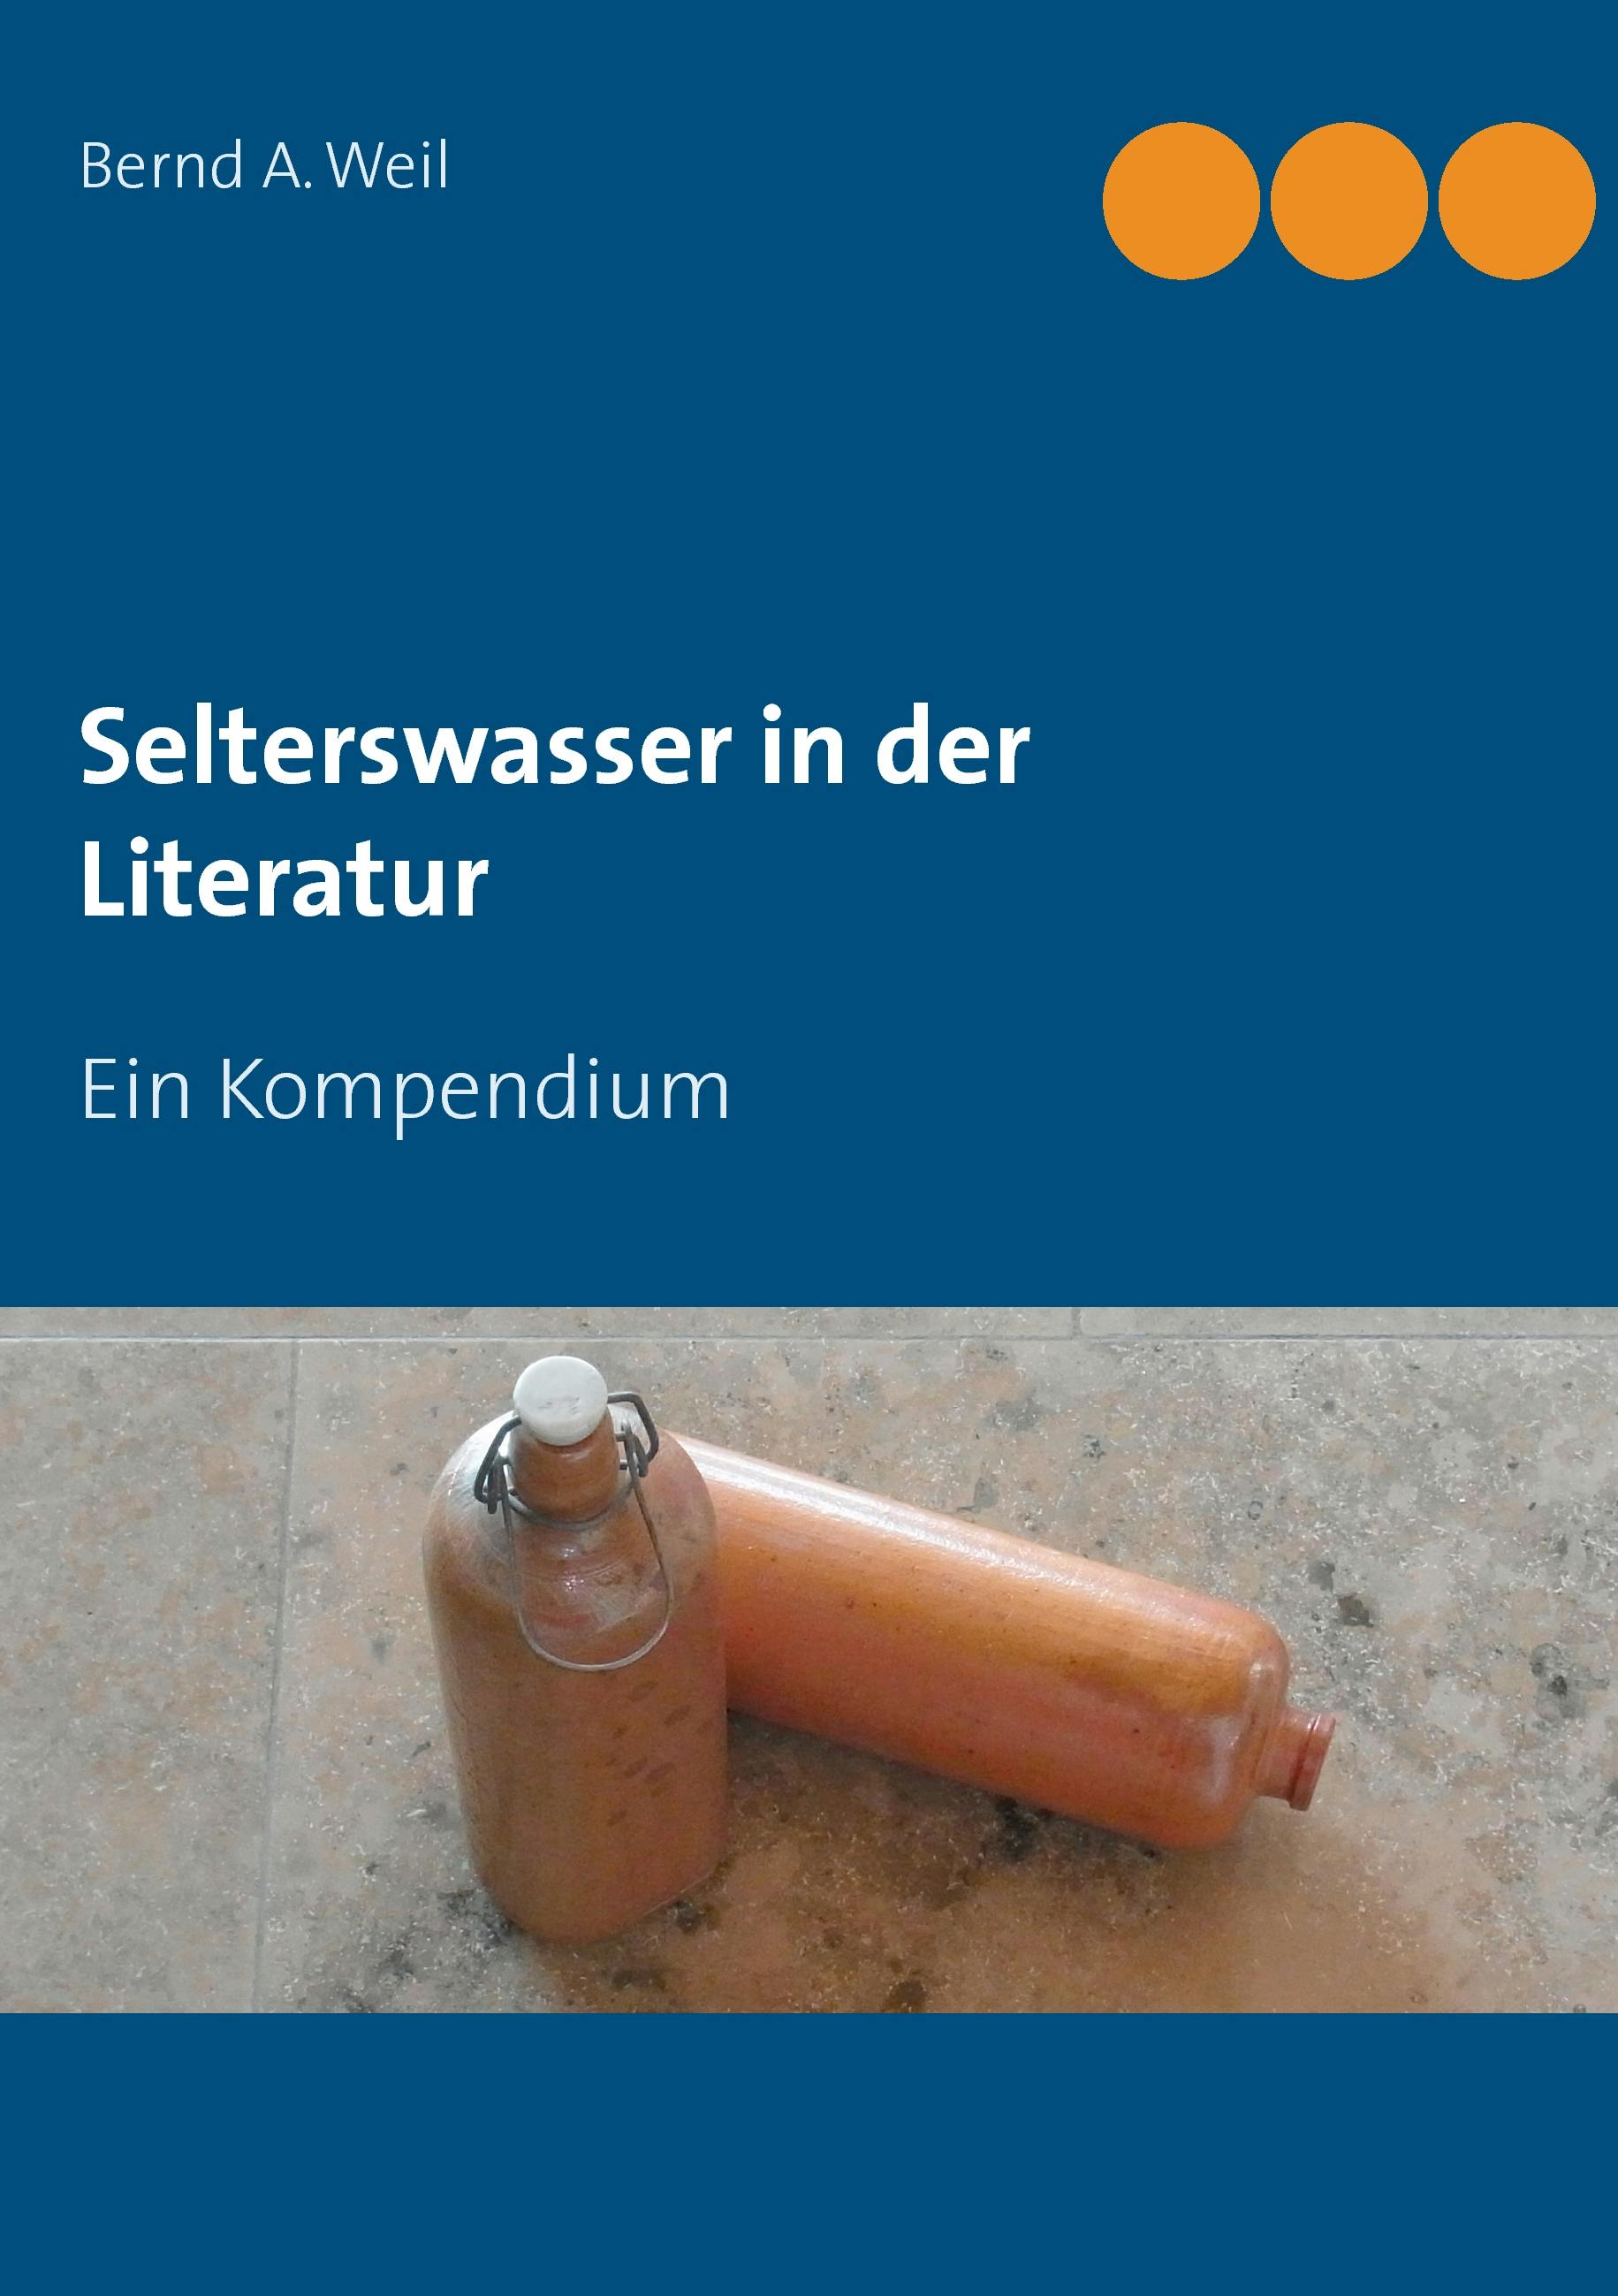 Selterswasser in der Literatur - Bernd A. Weil